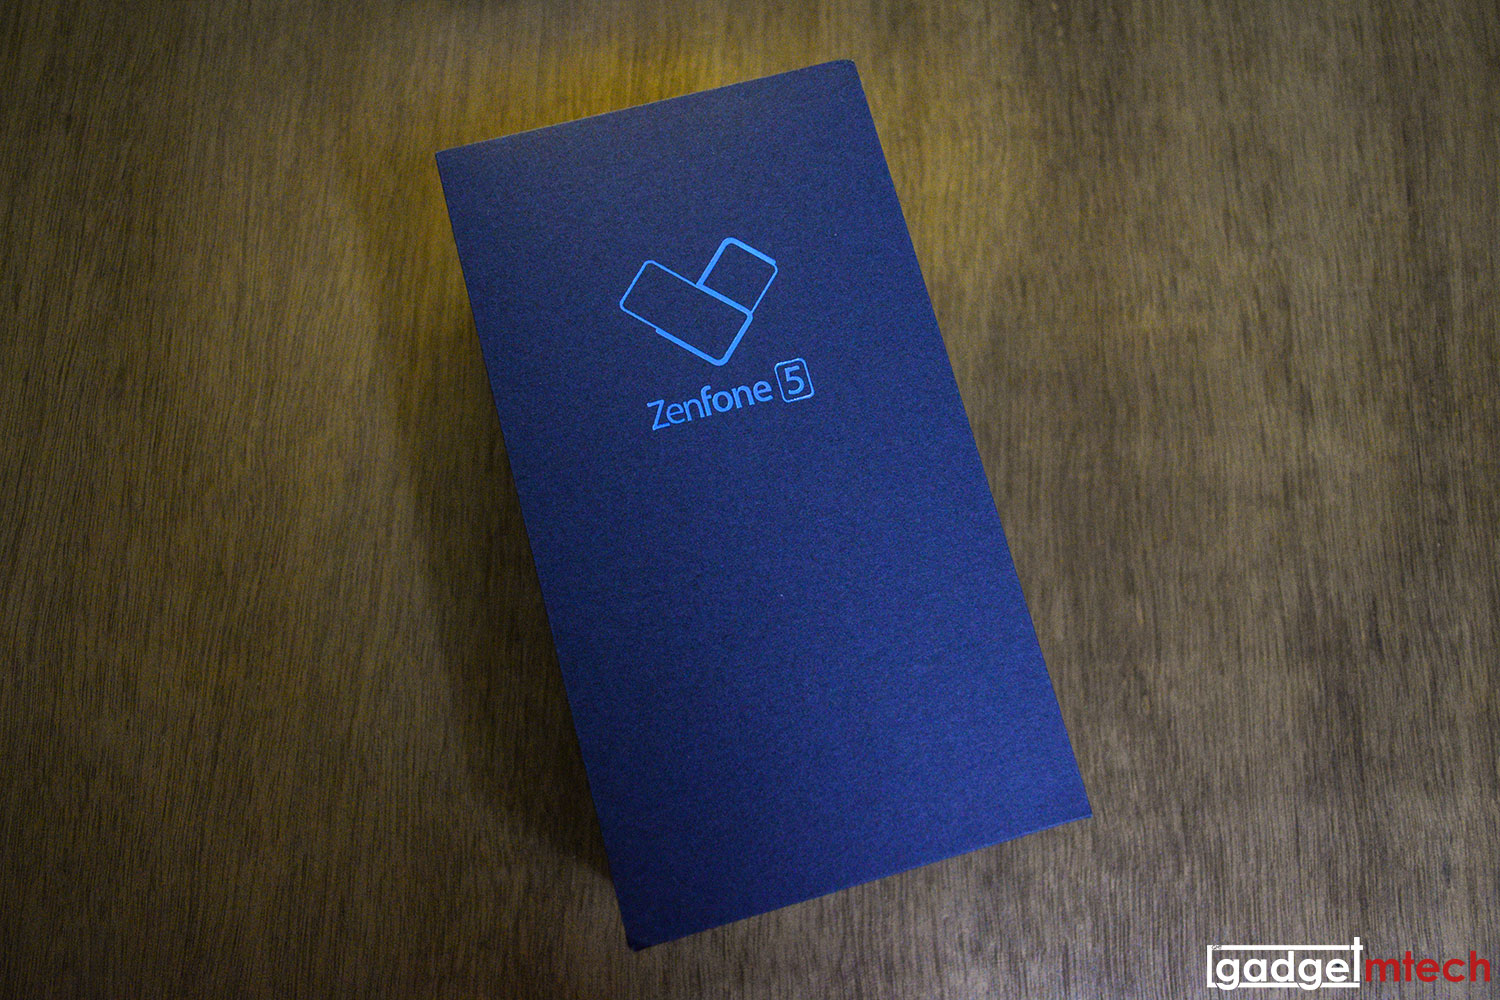 Unboxing & First Look: ASUS ZenFone 5